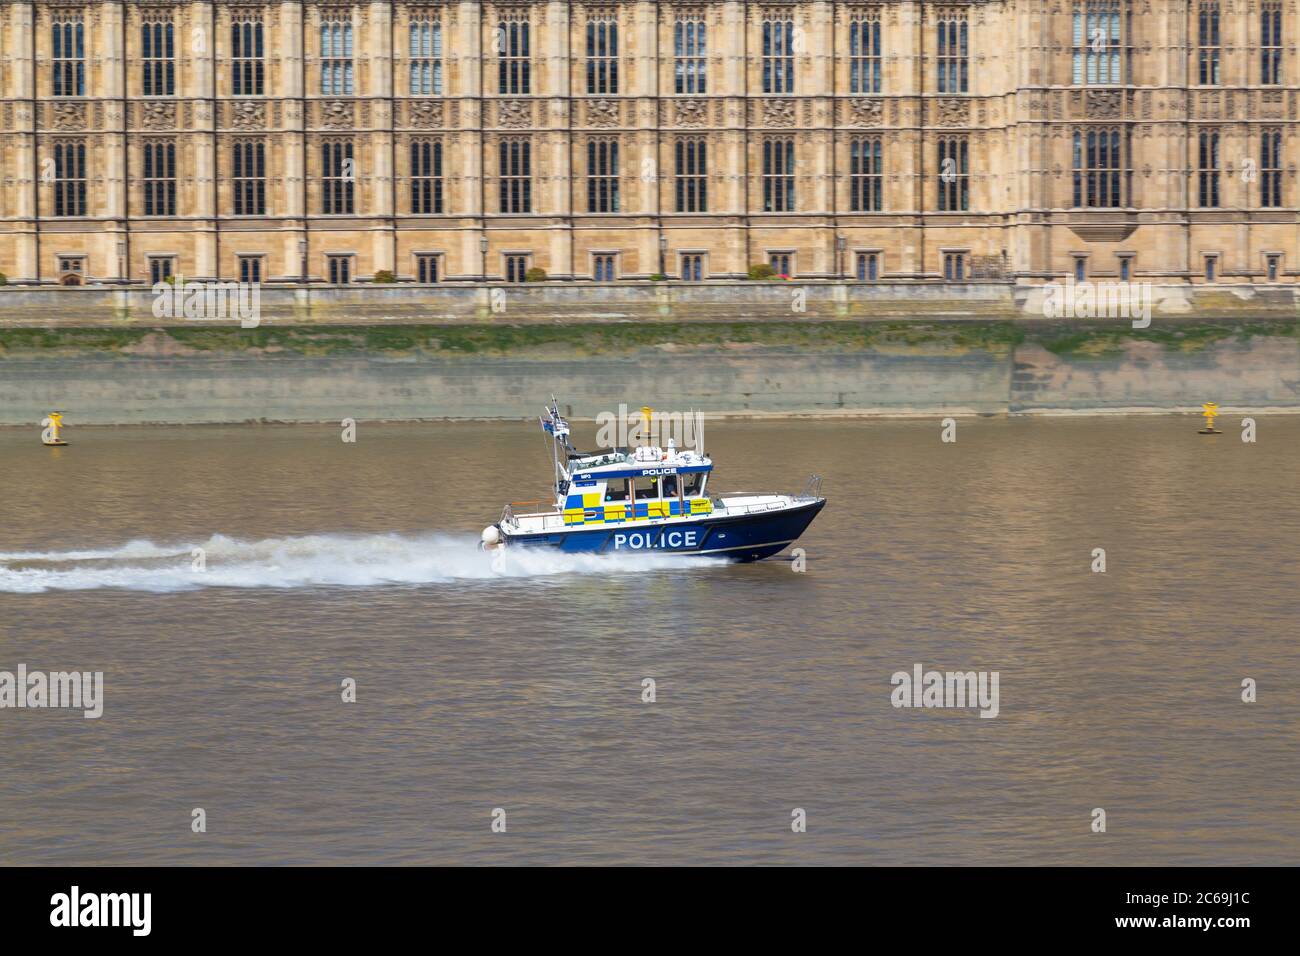 LONDRES, Royaume-Uni - 18 JUILLET 2015 : un bateau de police le long de la Tamise pendant la journée Banque D'Images